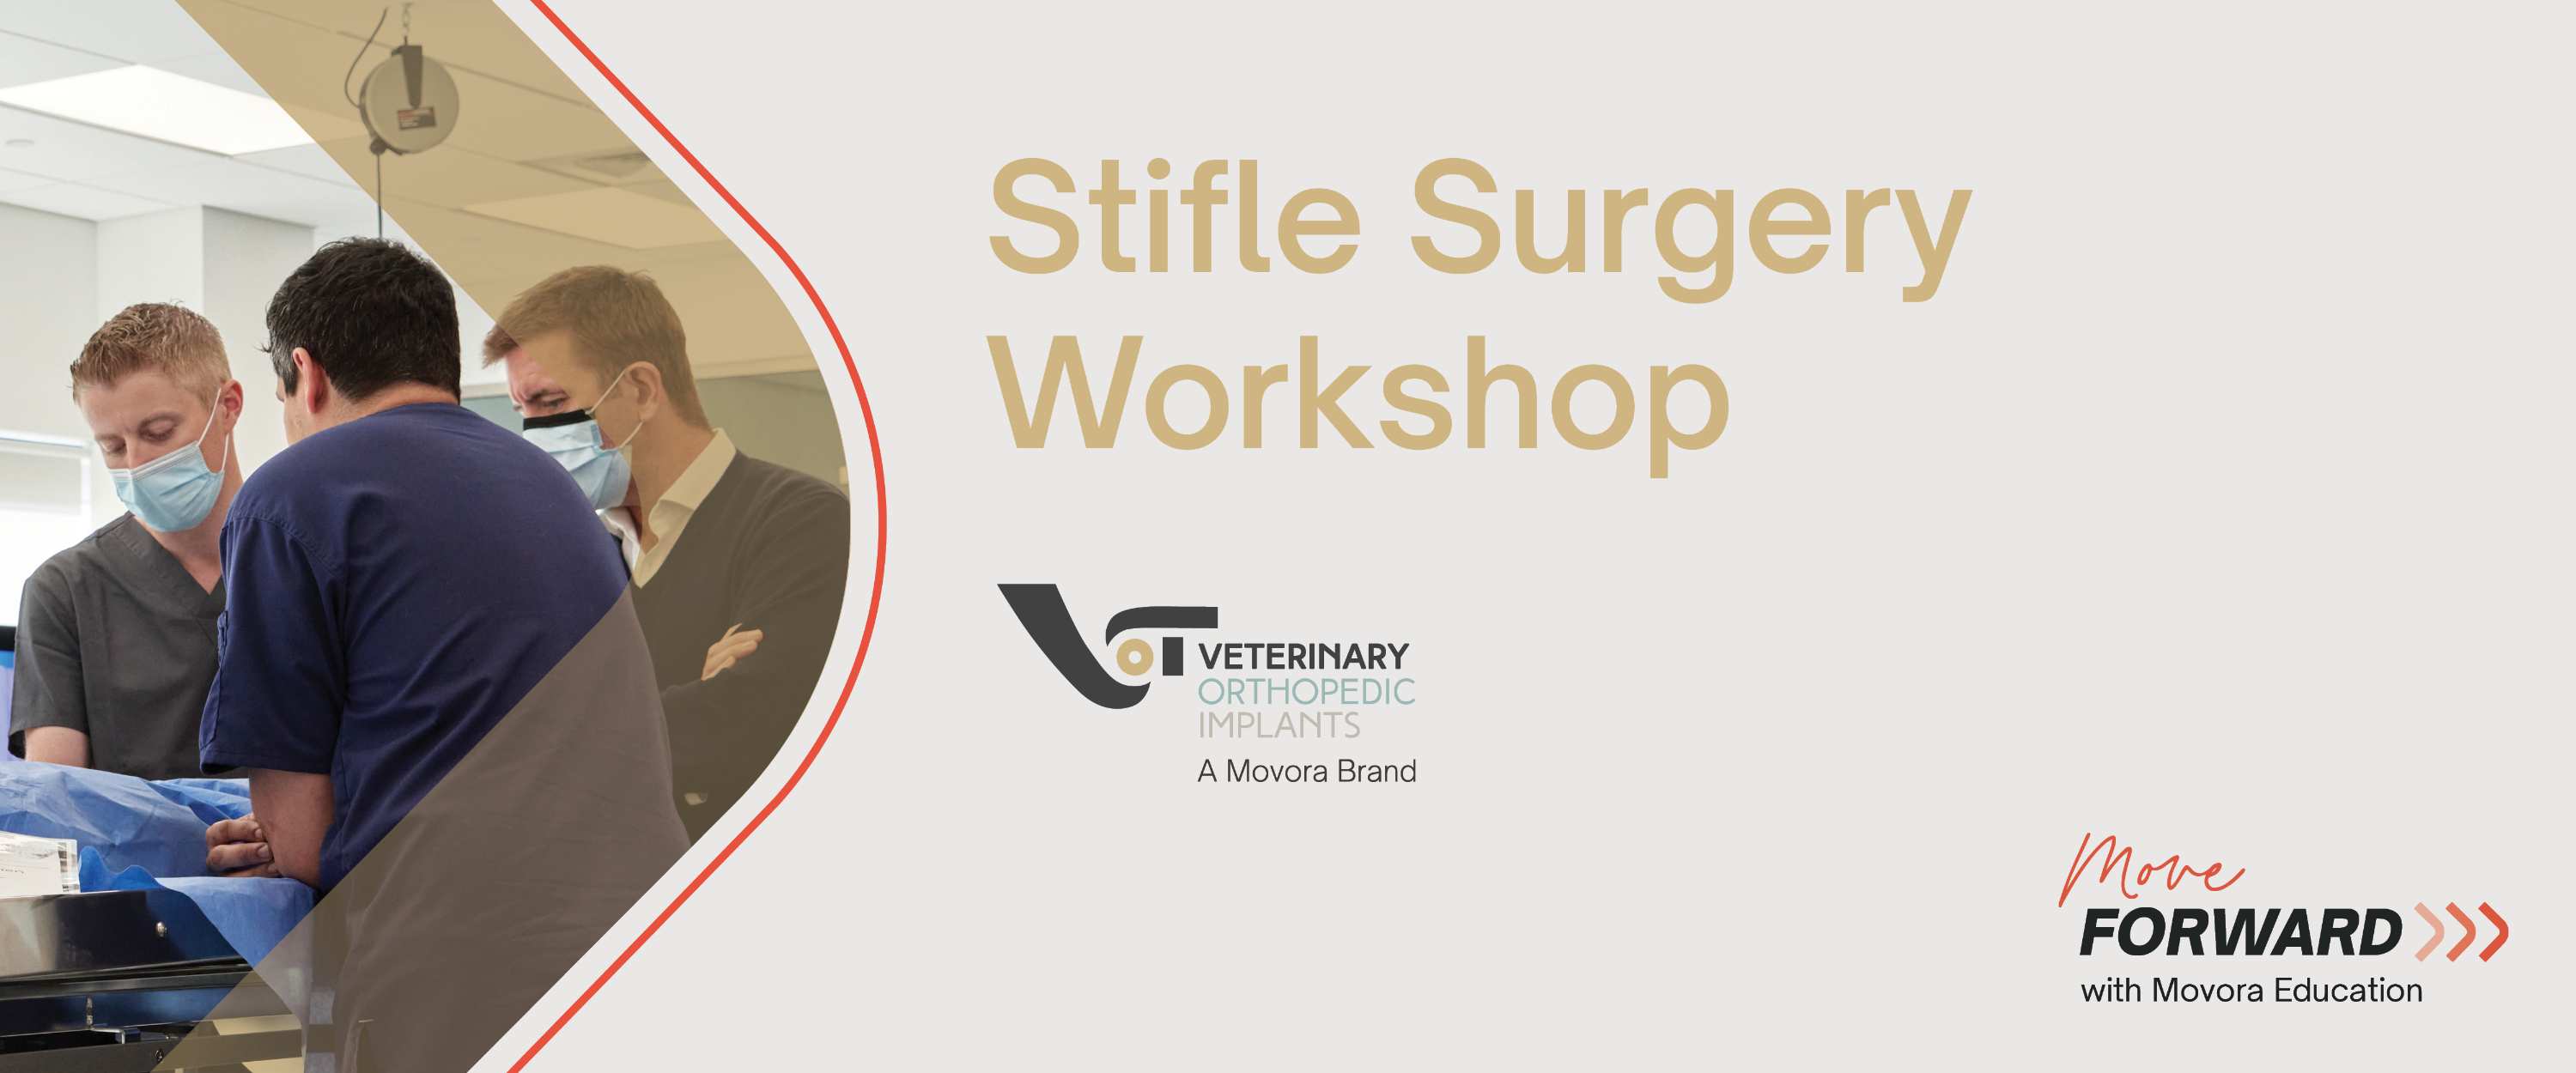 Stifle Surgery Workshop banner